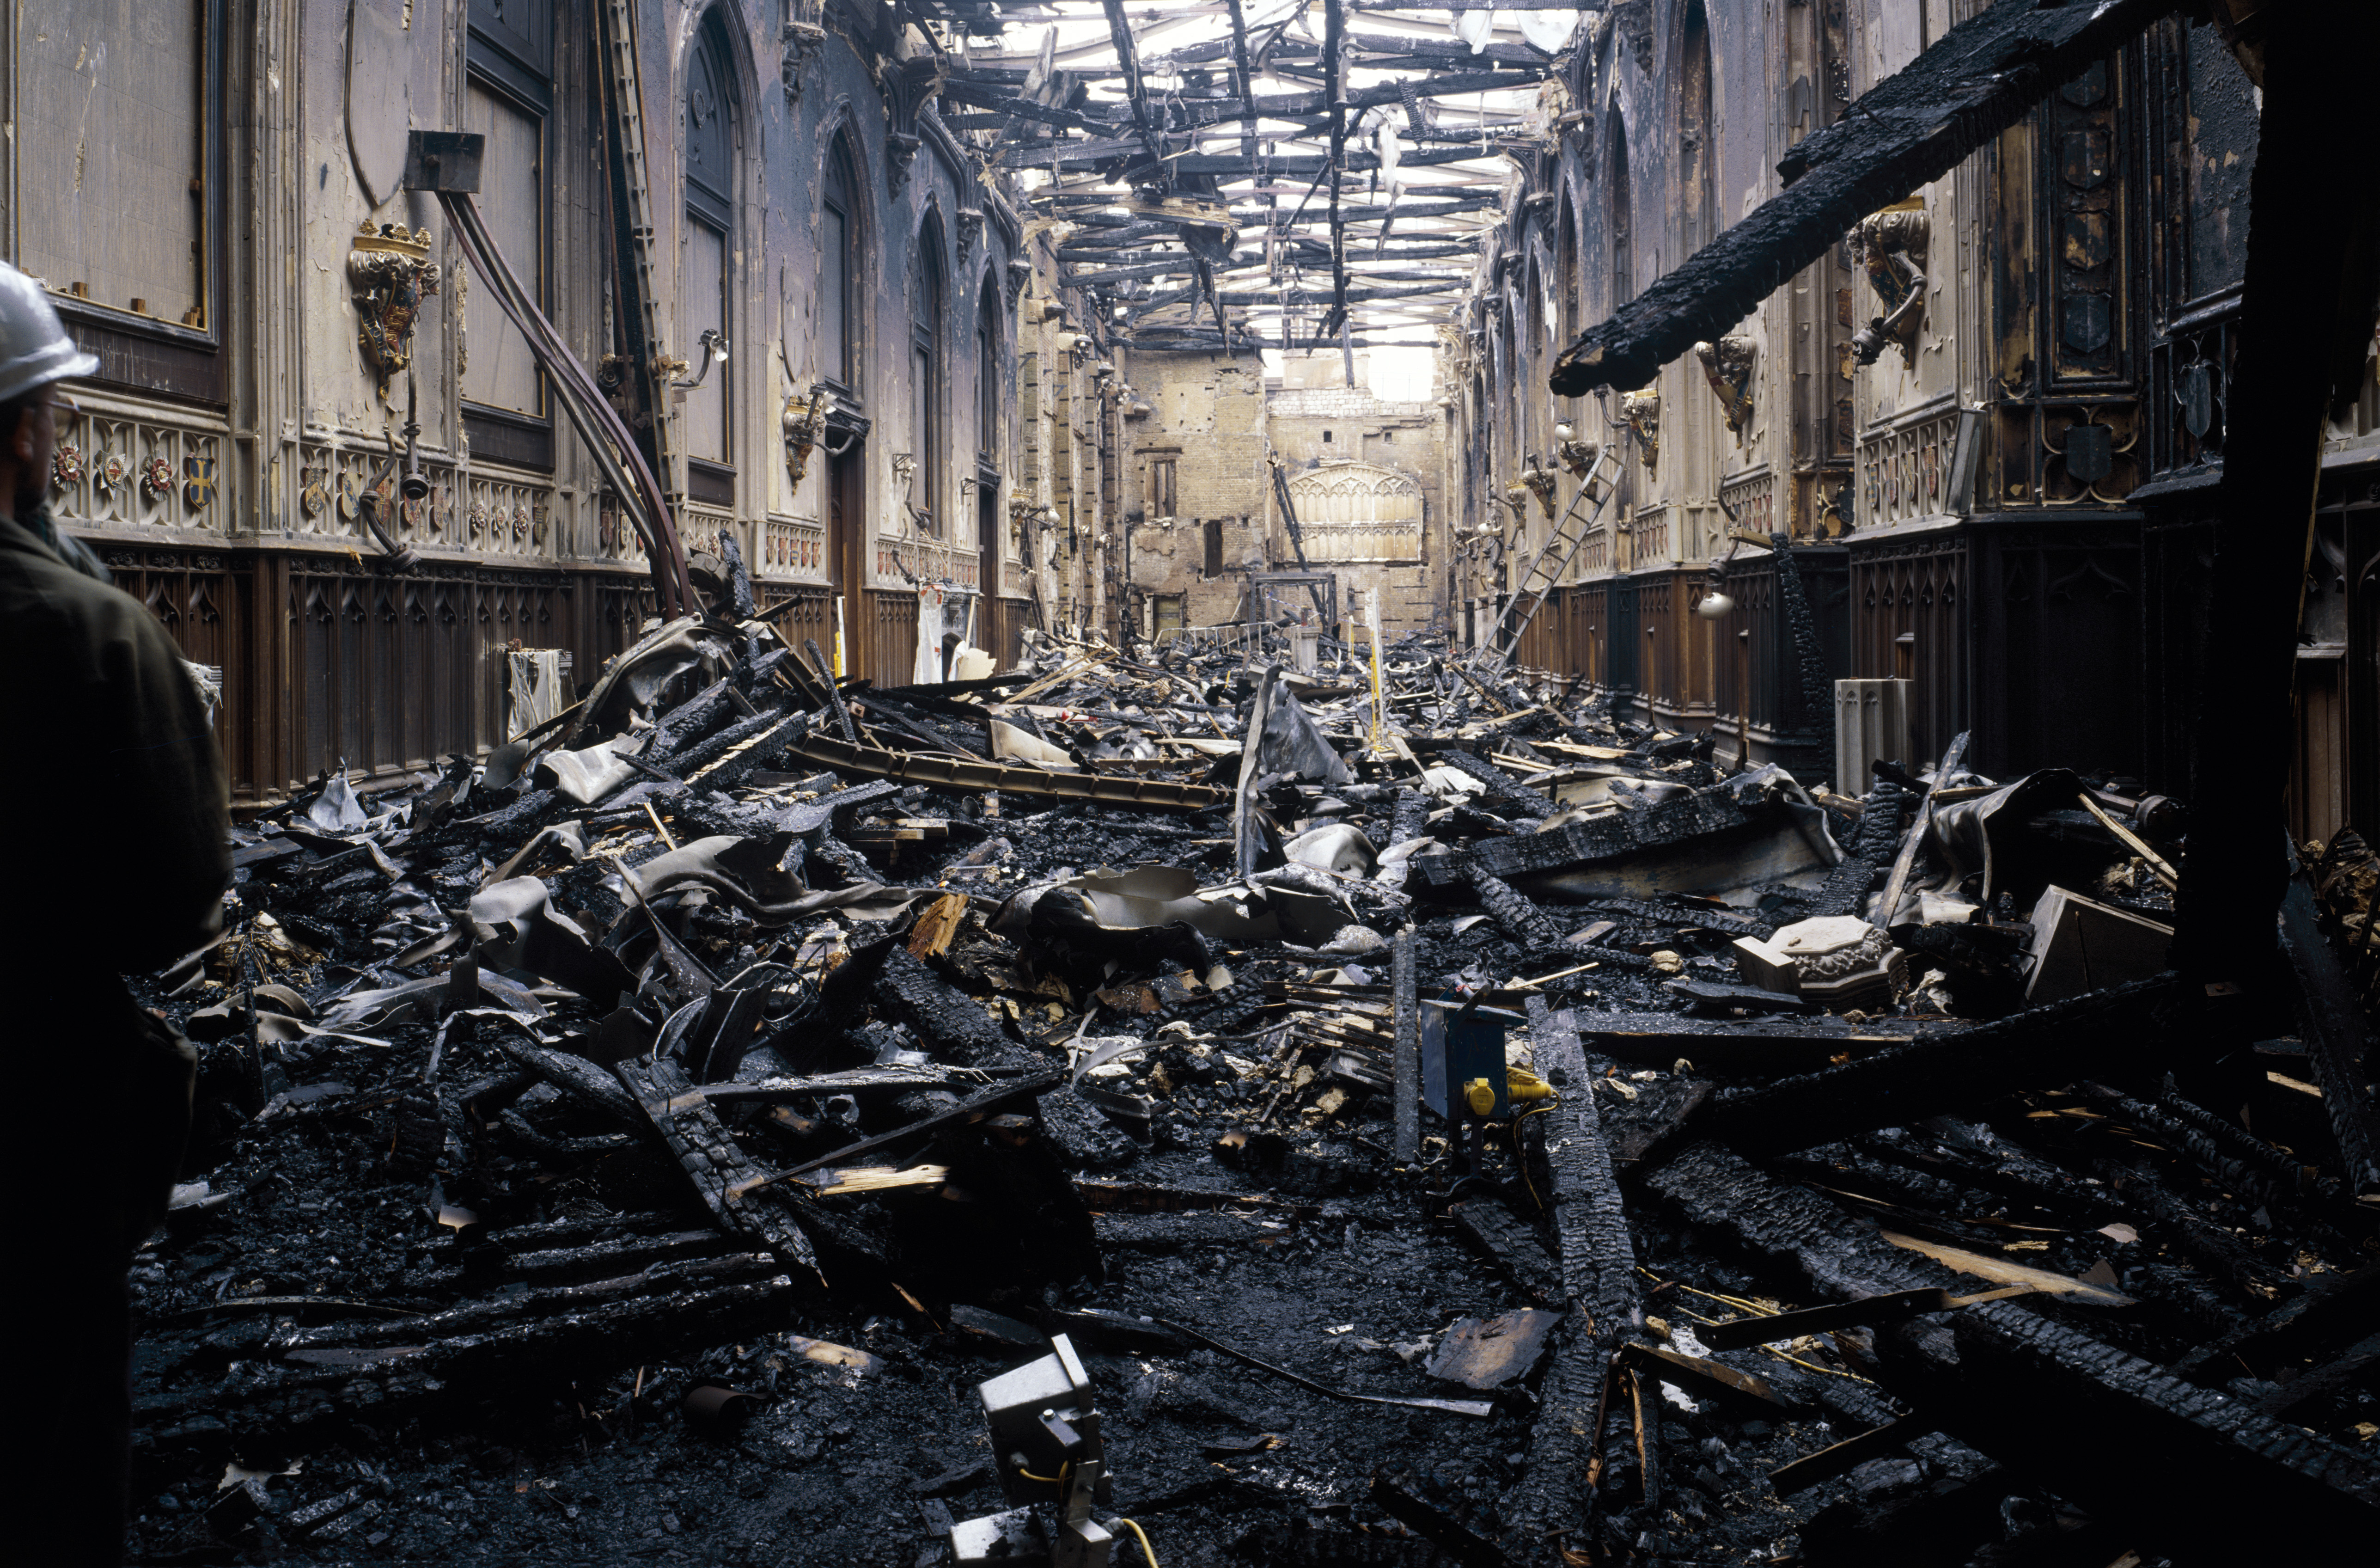 Dégâts d'incendie au St George's Hall, château de Windsor